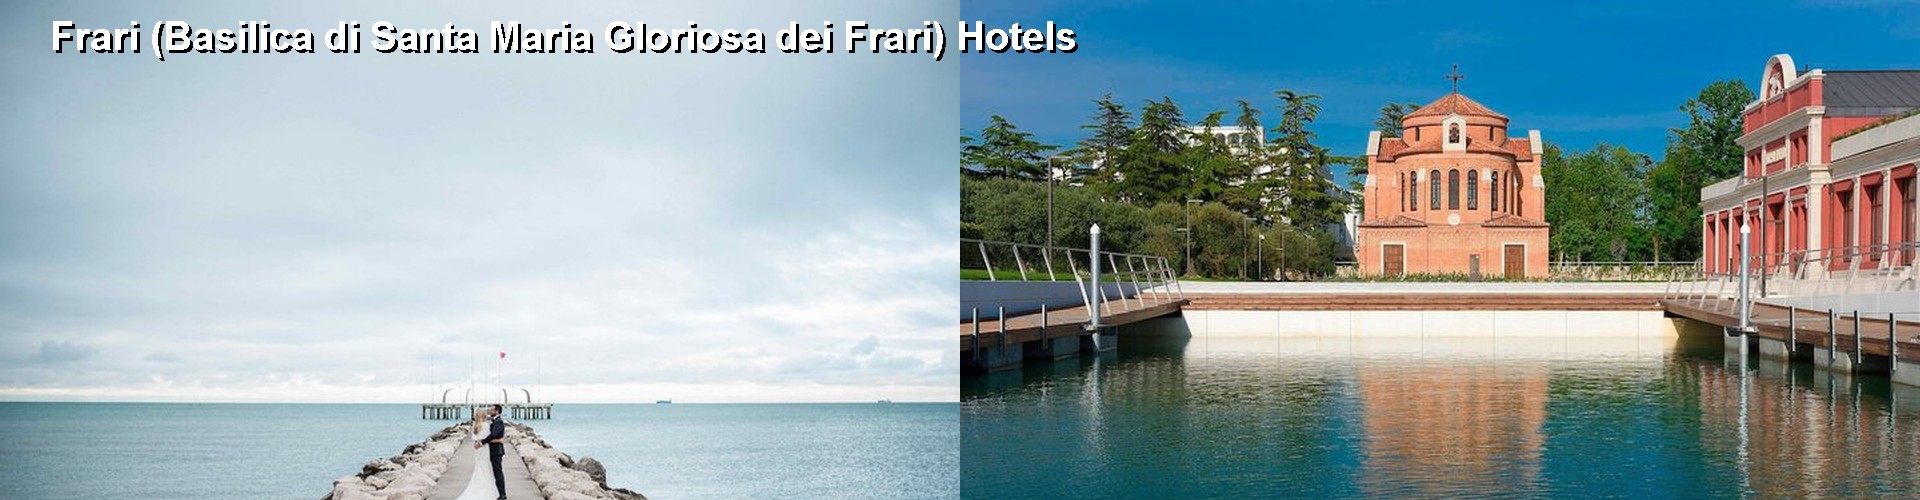 5 Best Hotels near Frari (Basilica di Santa Maria Gloriosa dei Frari)